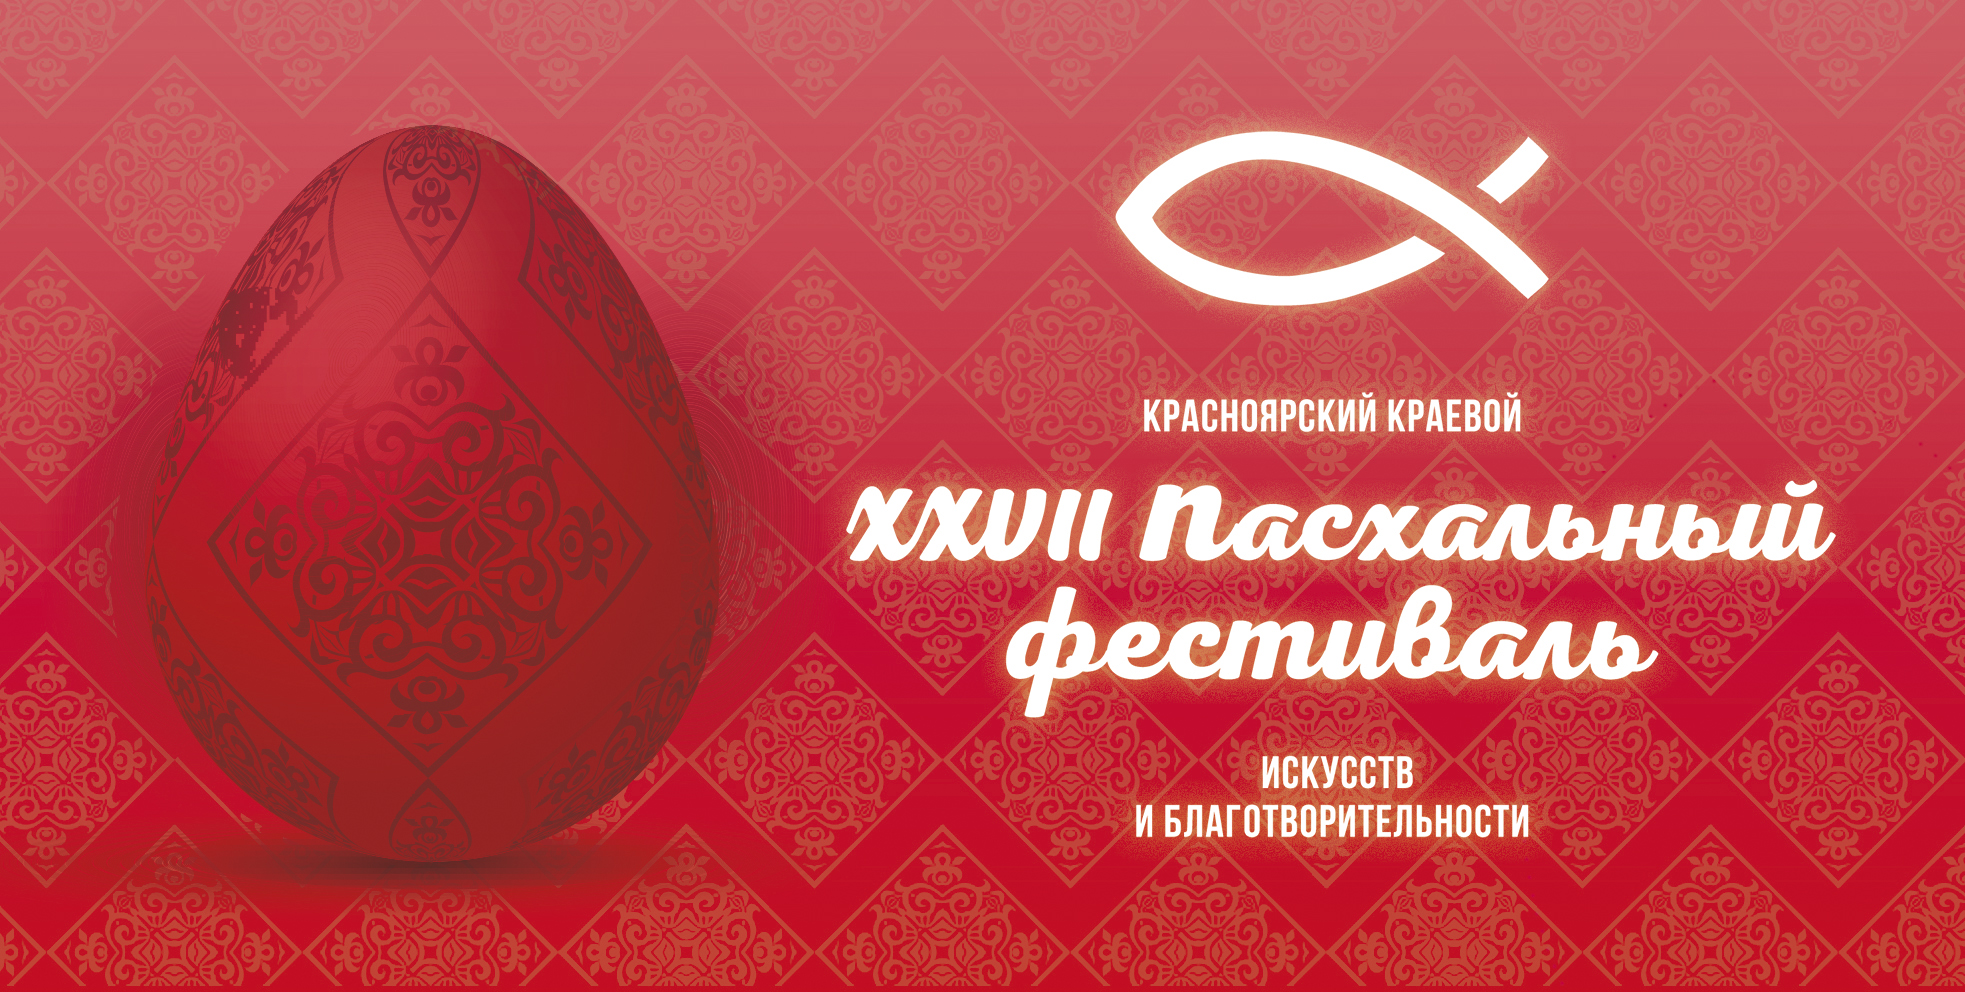 В Красноярском крае готовятся к XXVII Пасхальному фестивалю искусств и благотворительности